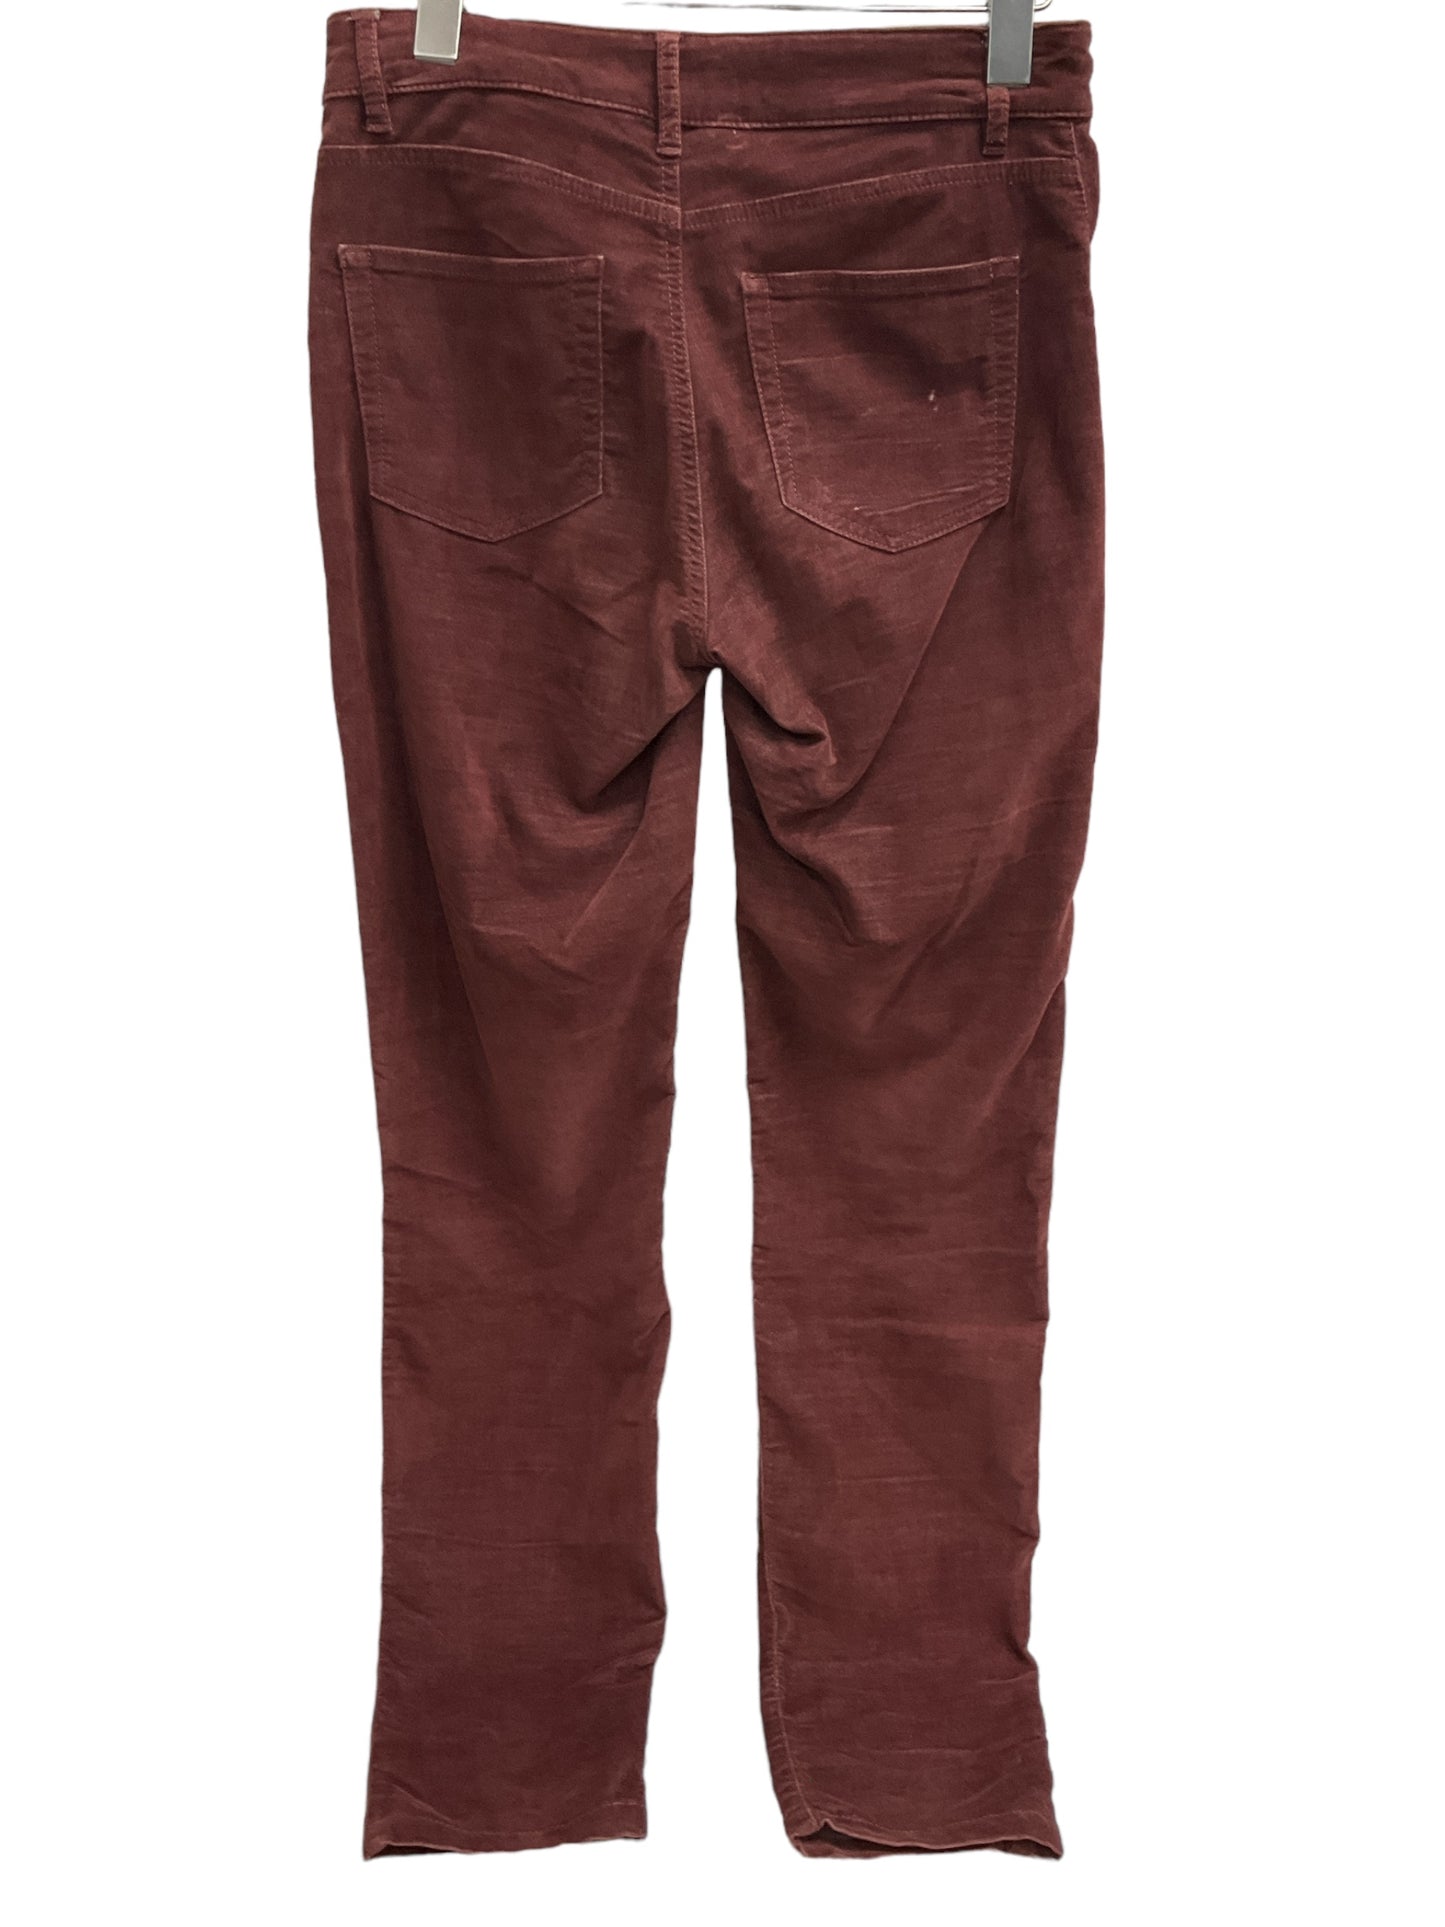 Pants Corduroy By Cma  Size: 2